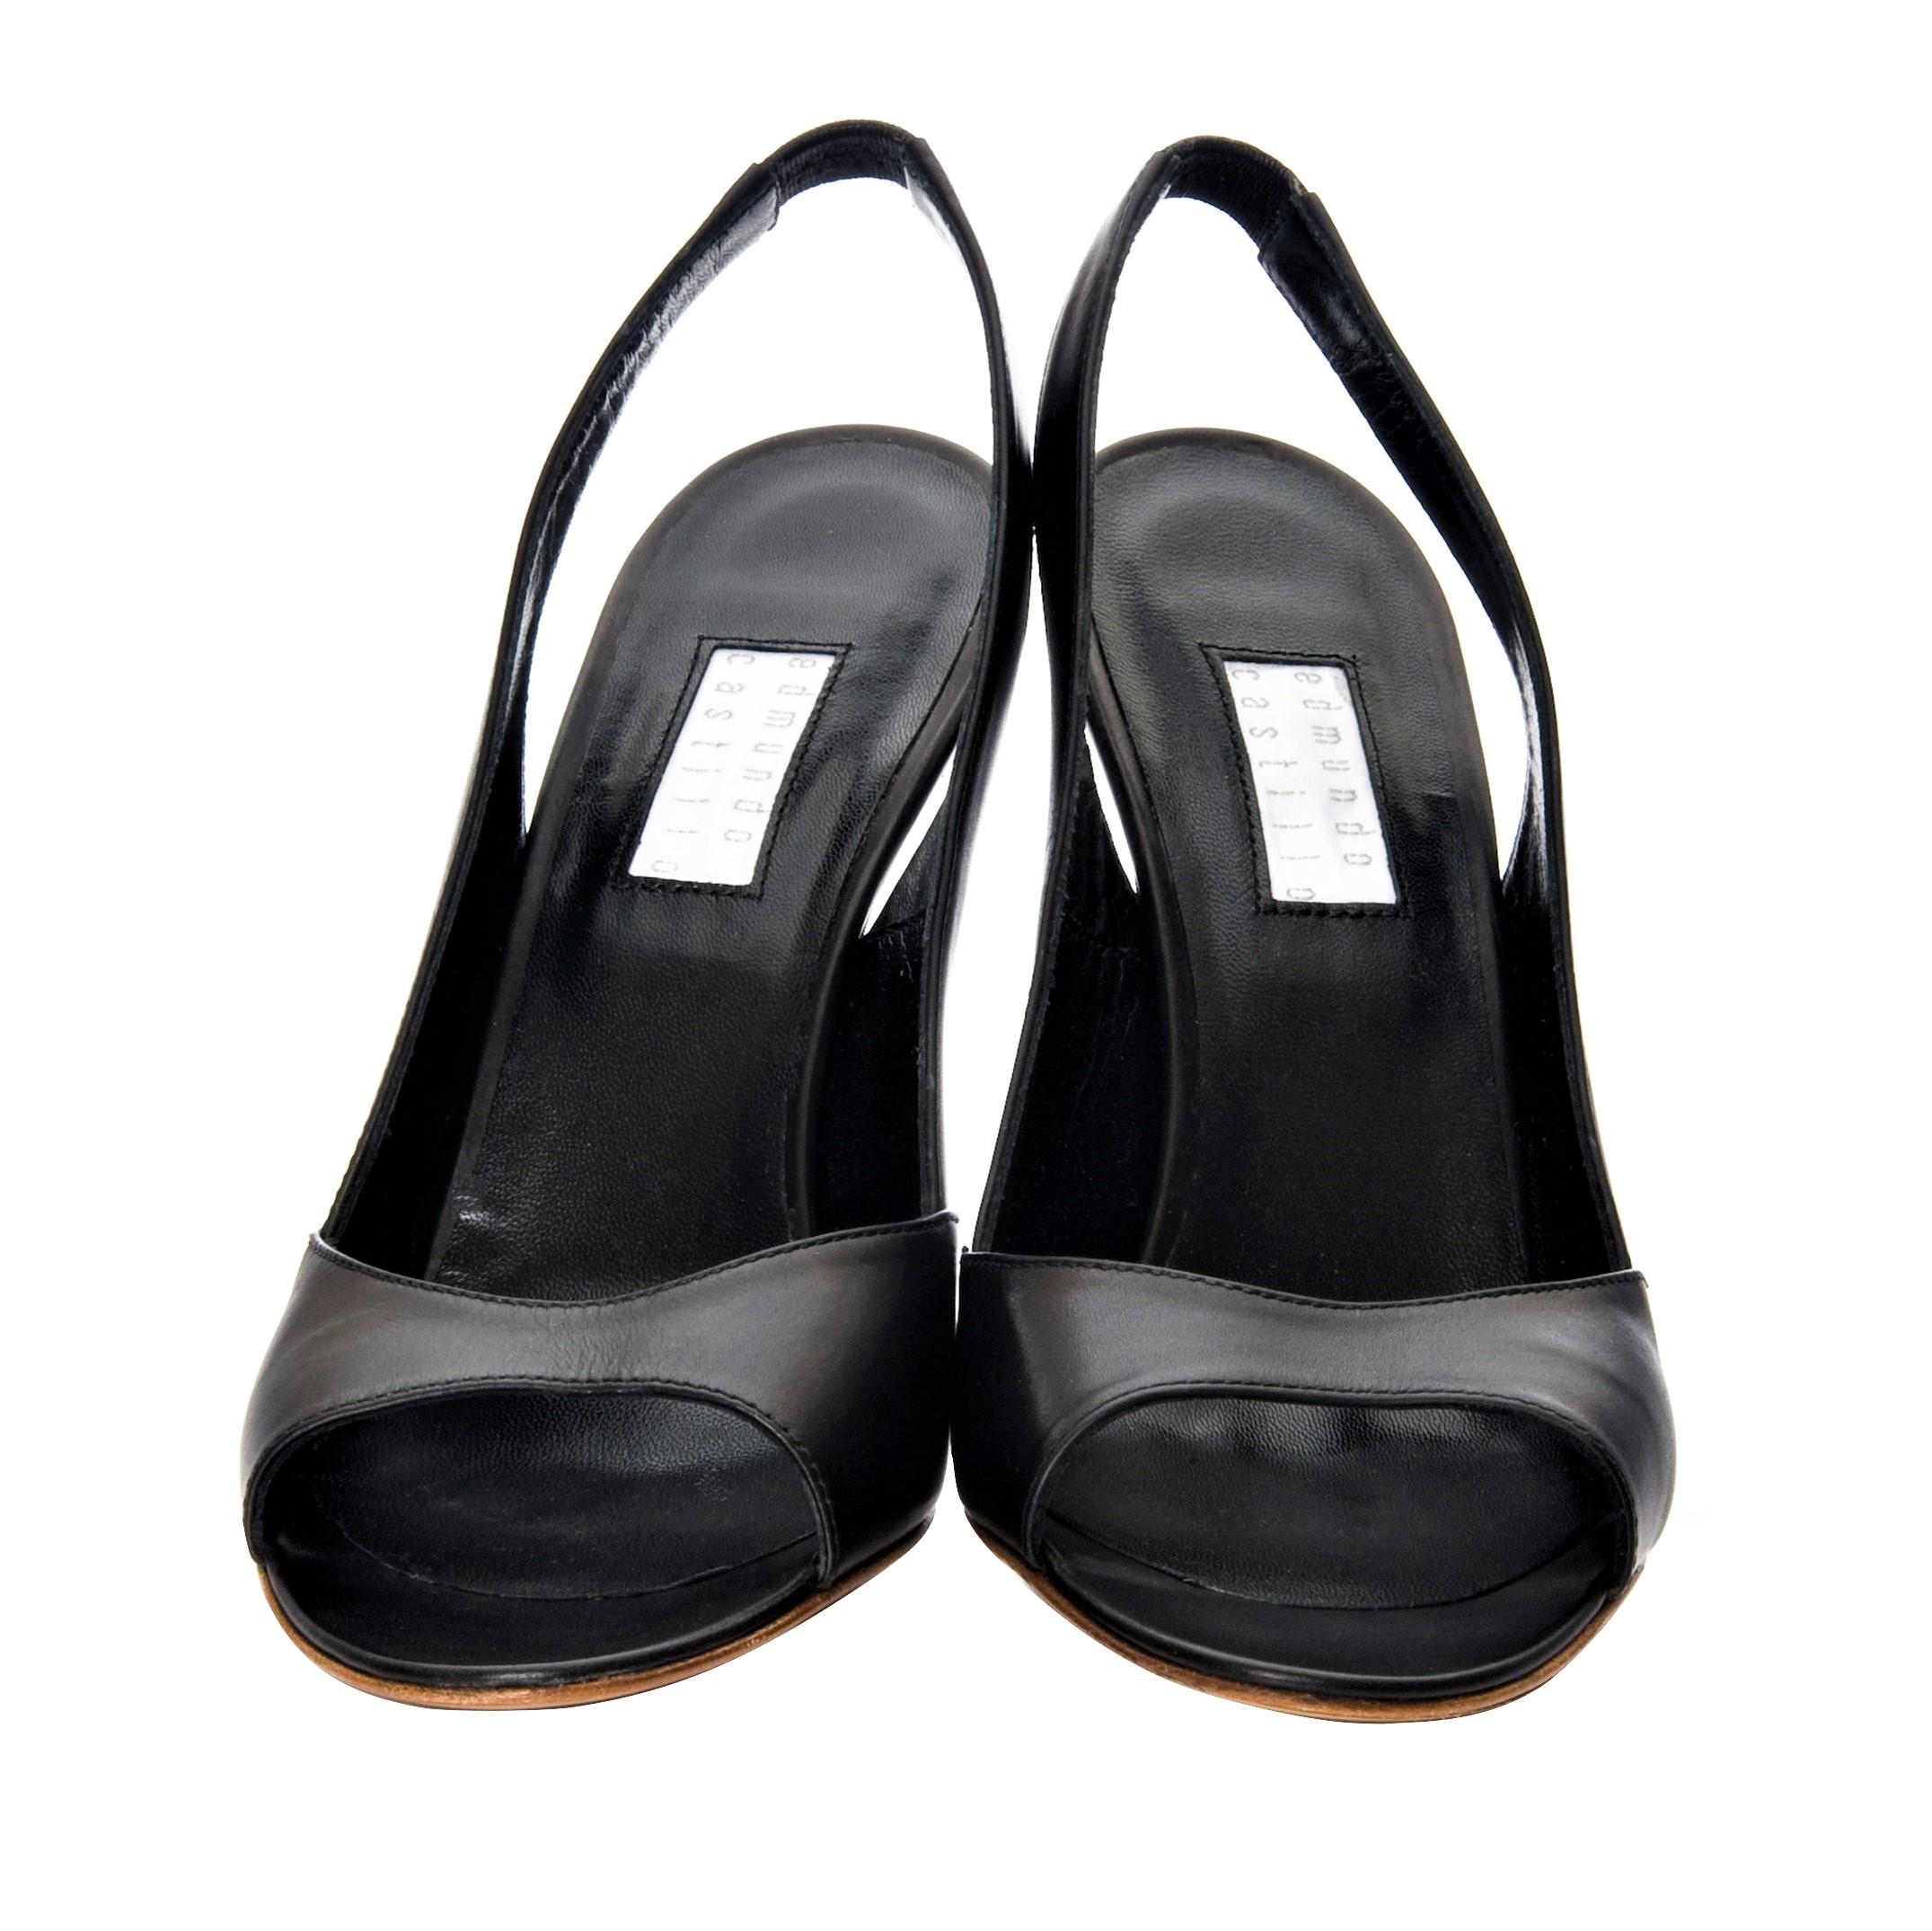 New Edmundo Castillo Black Leather Sling Heels 2